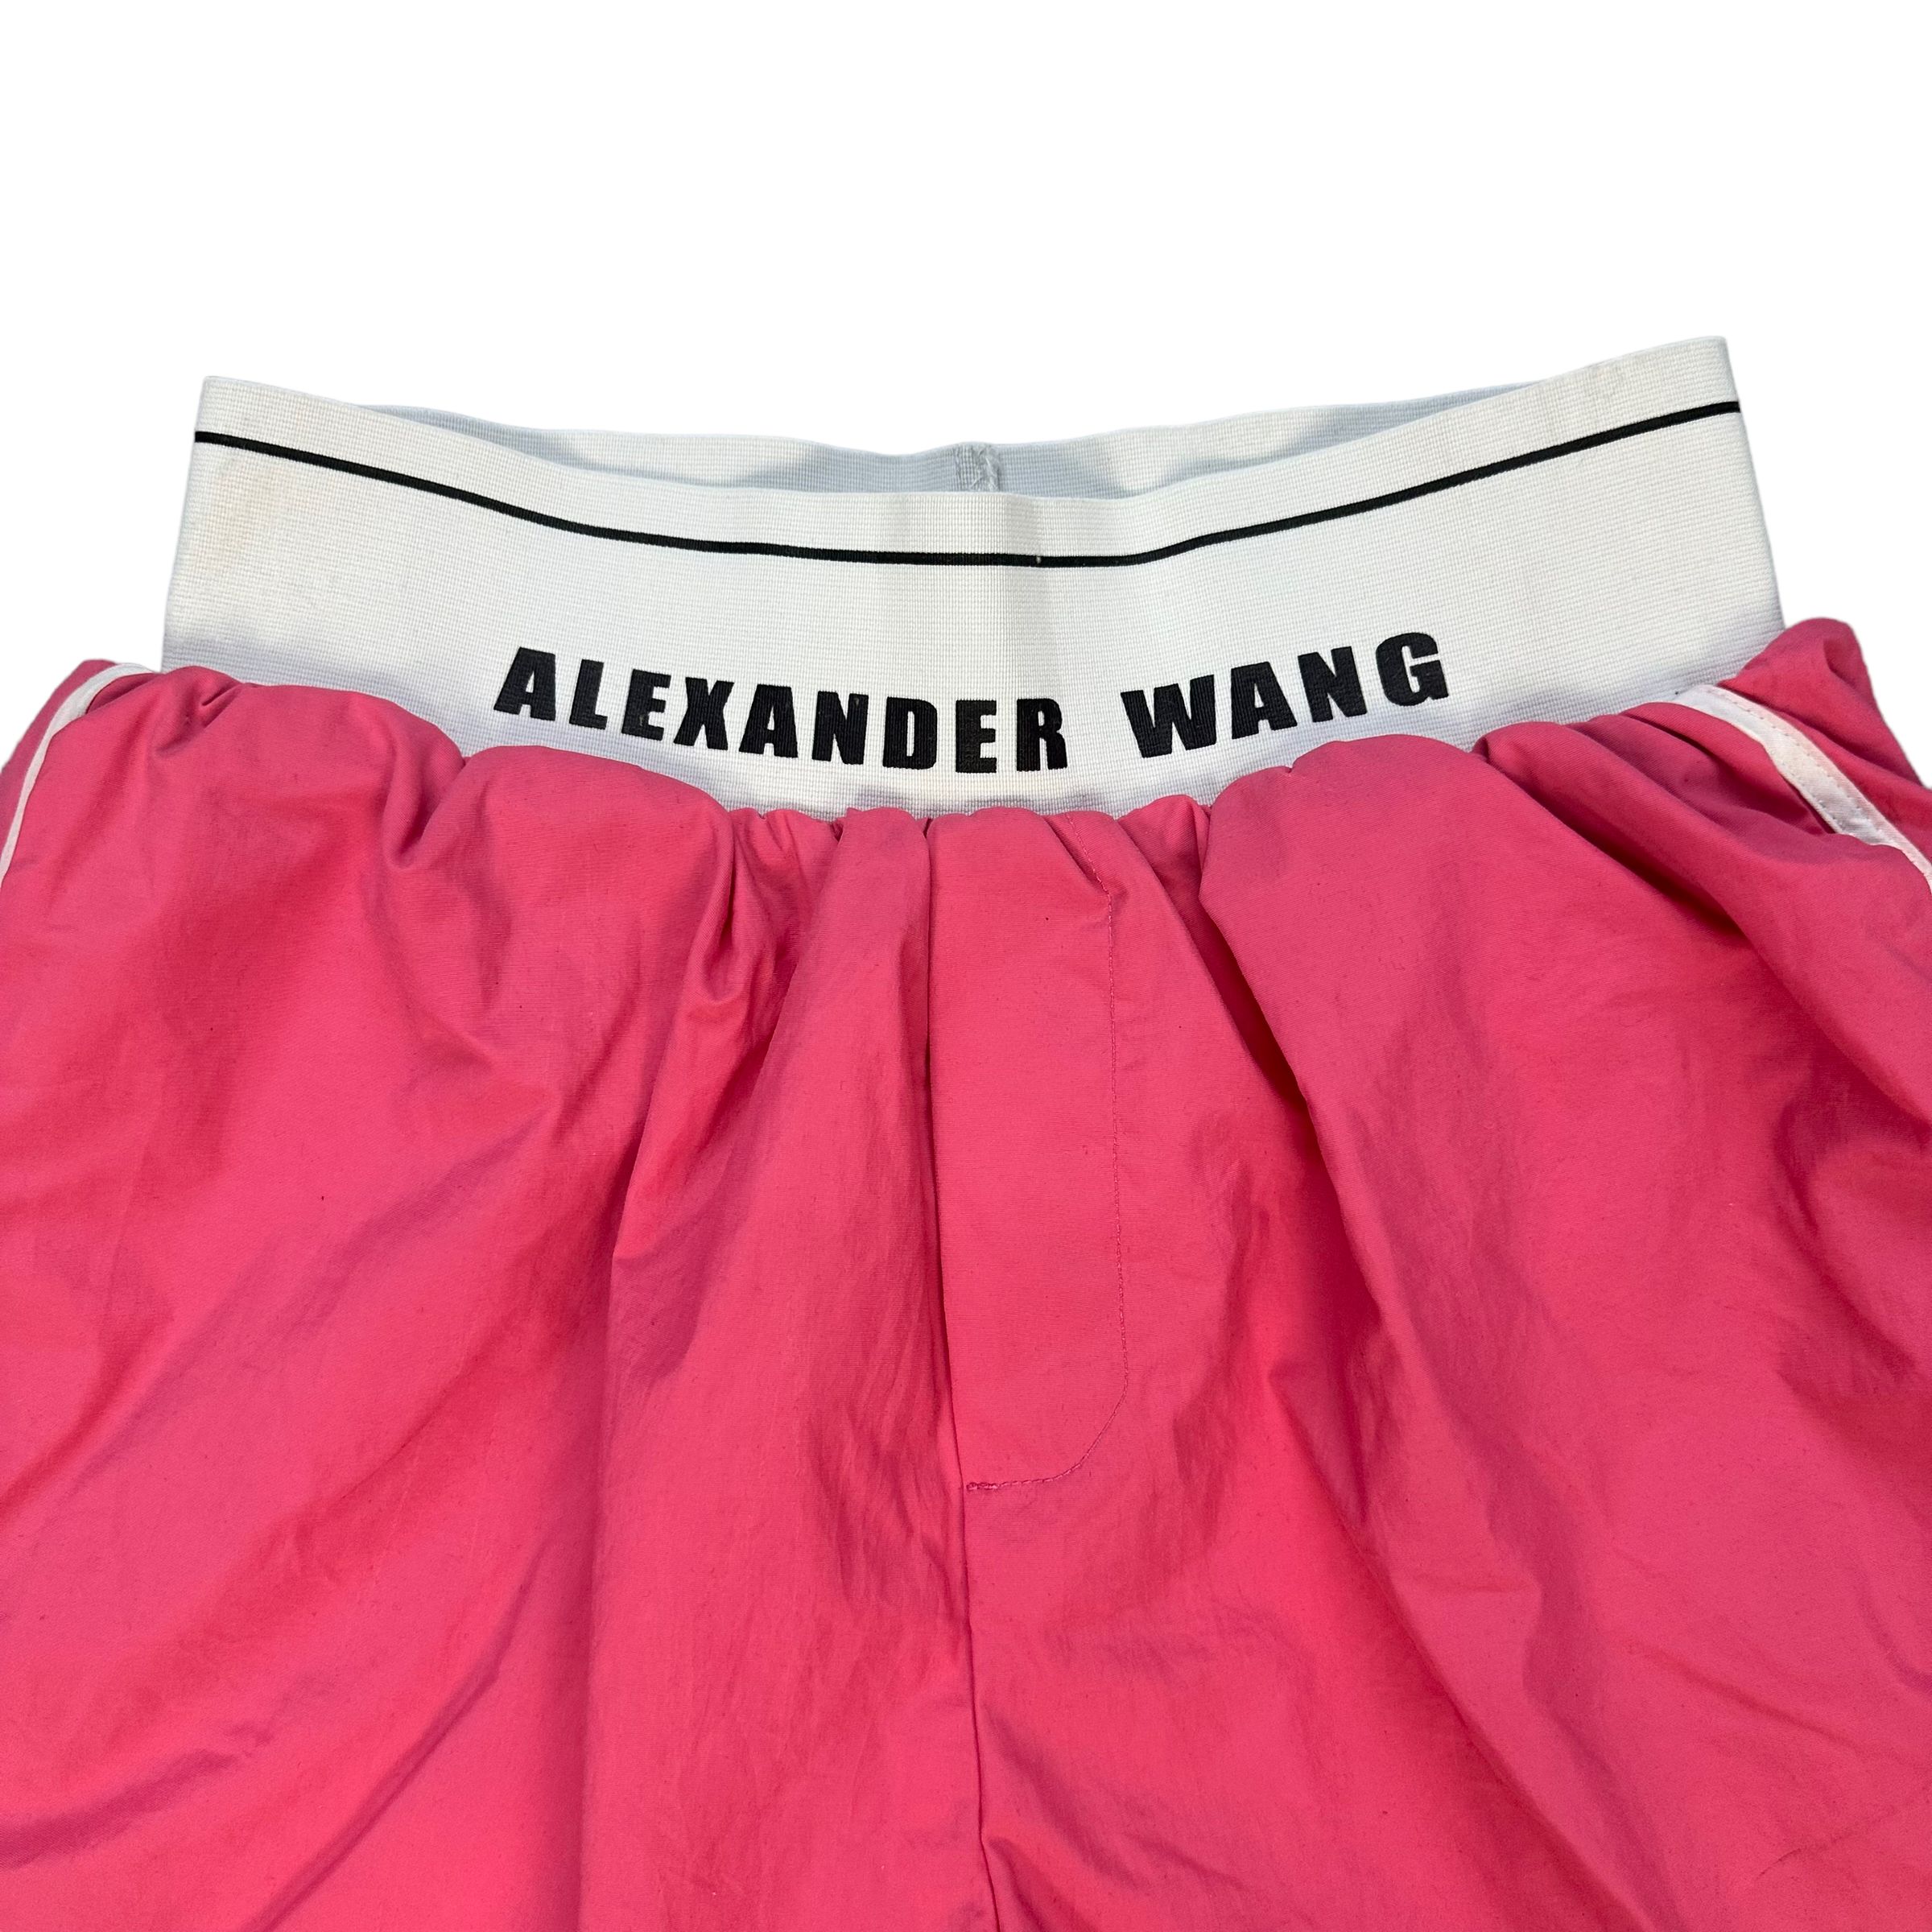 ALEXANDER WANG BIG LOGO SHORTS #7736-167 - 2